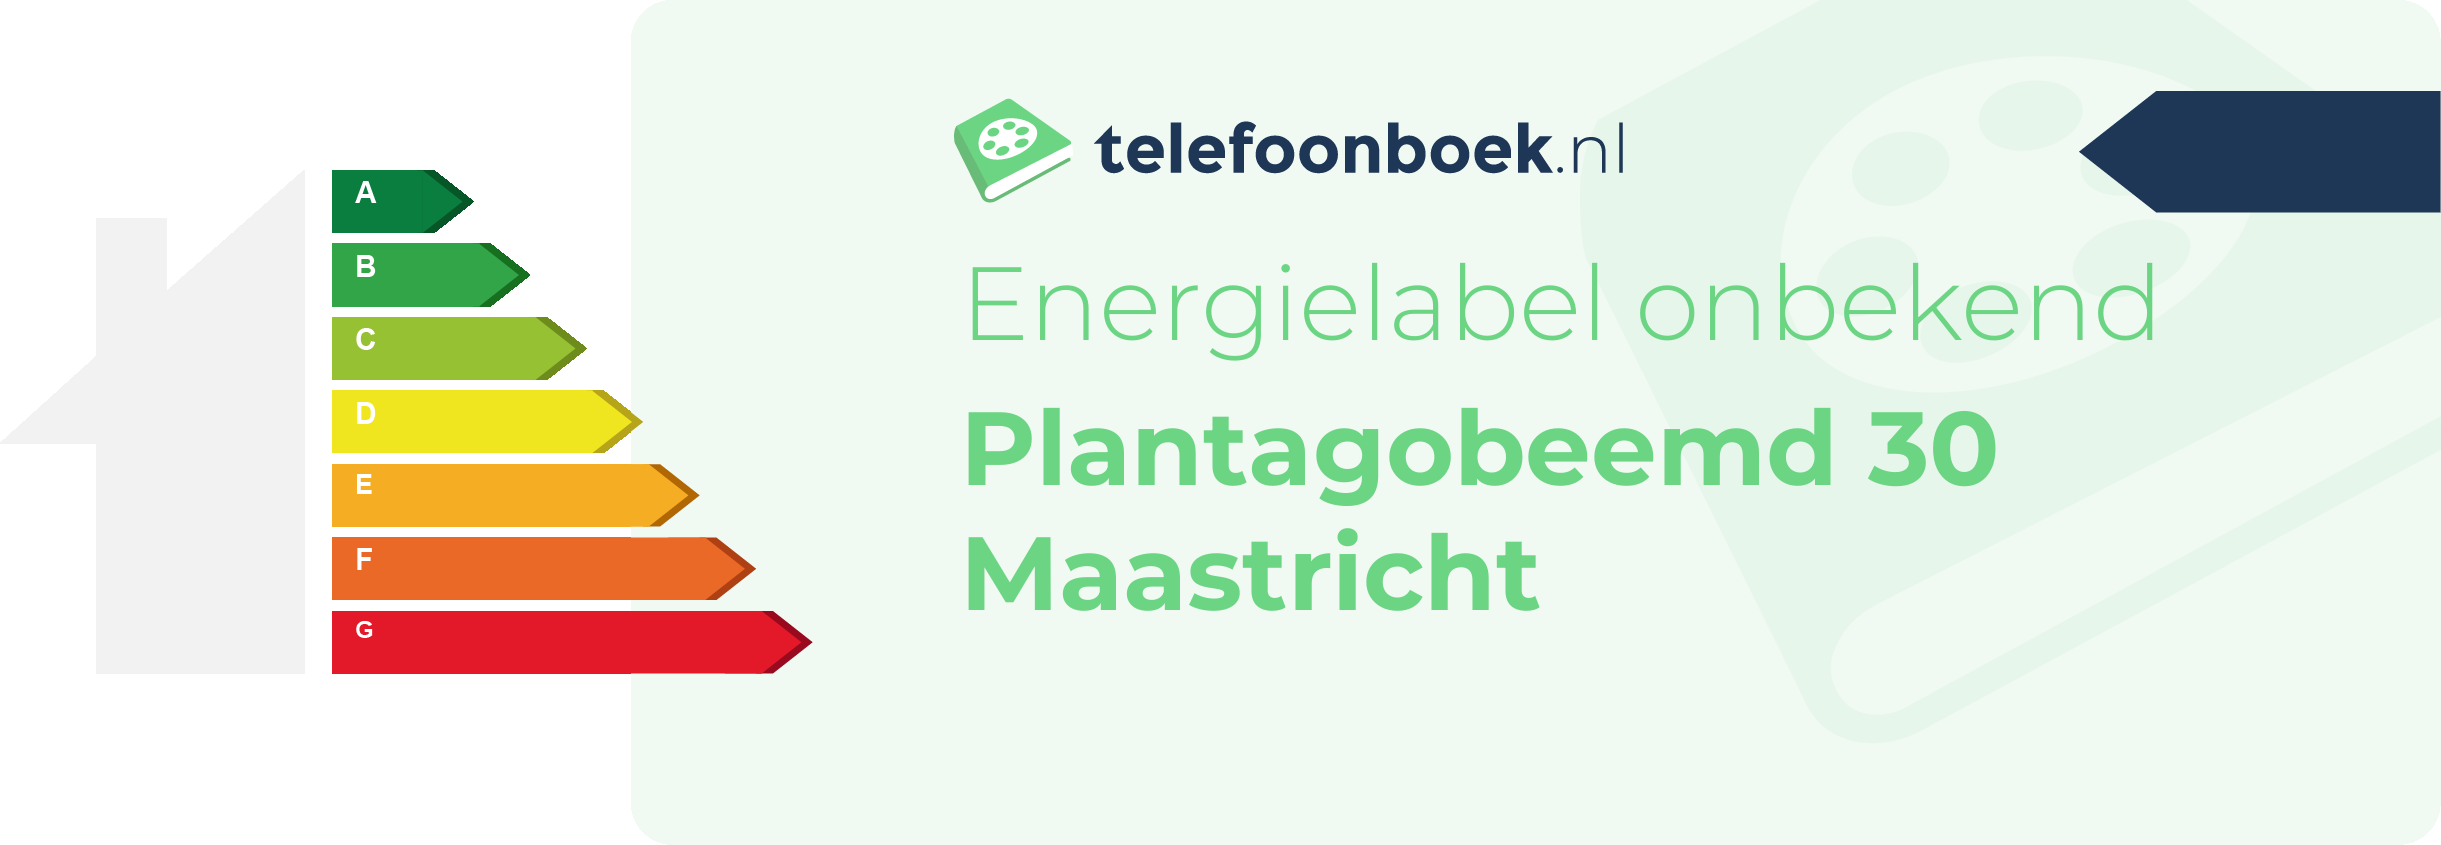 Energielabel Plantagobeemd 30 Maastricht